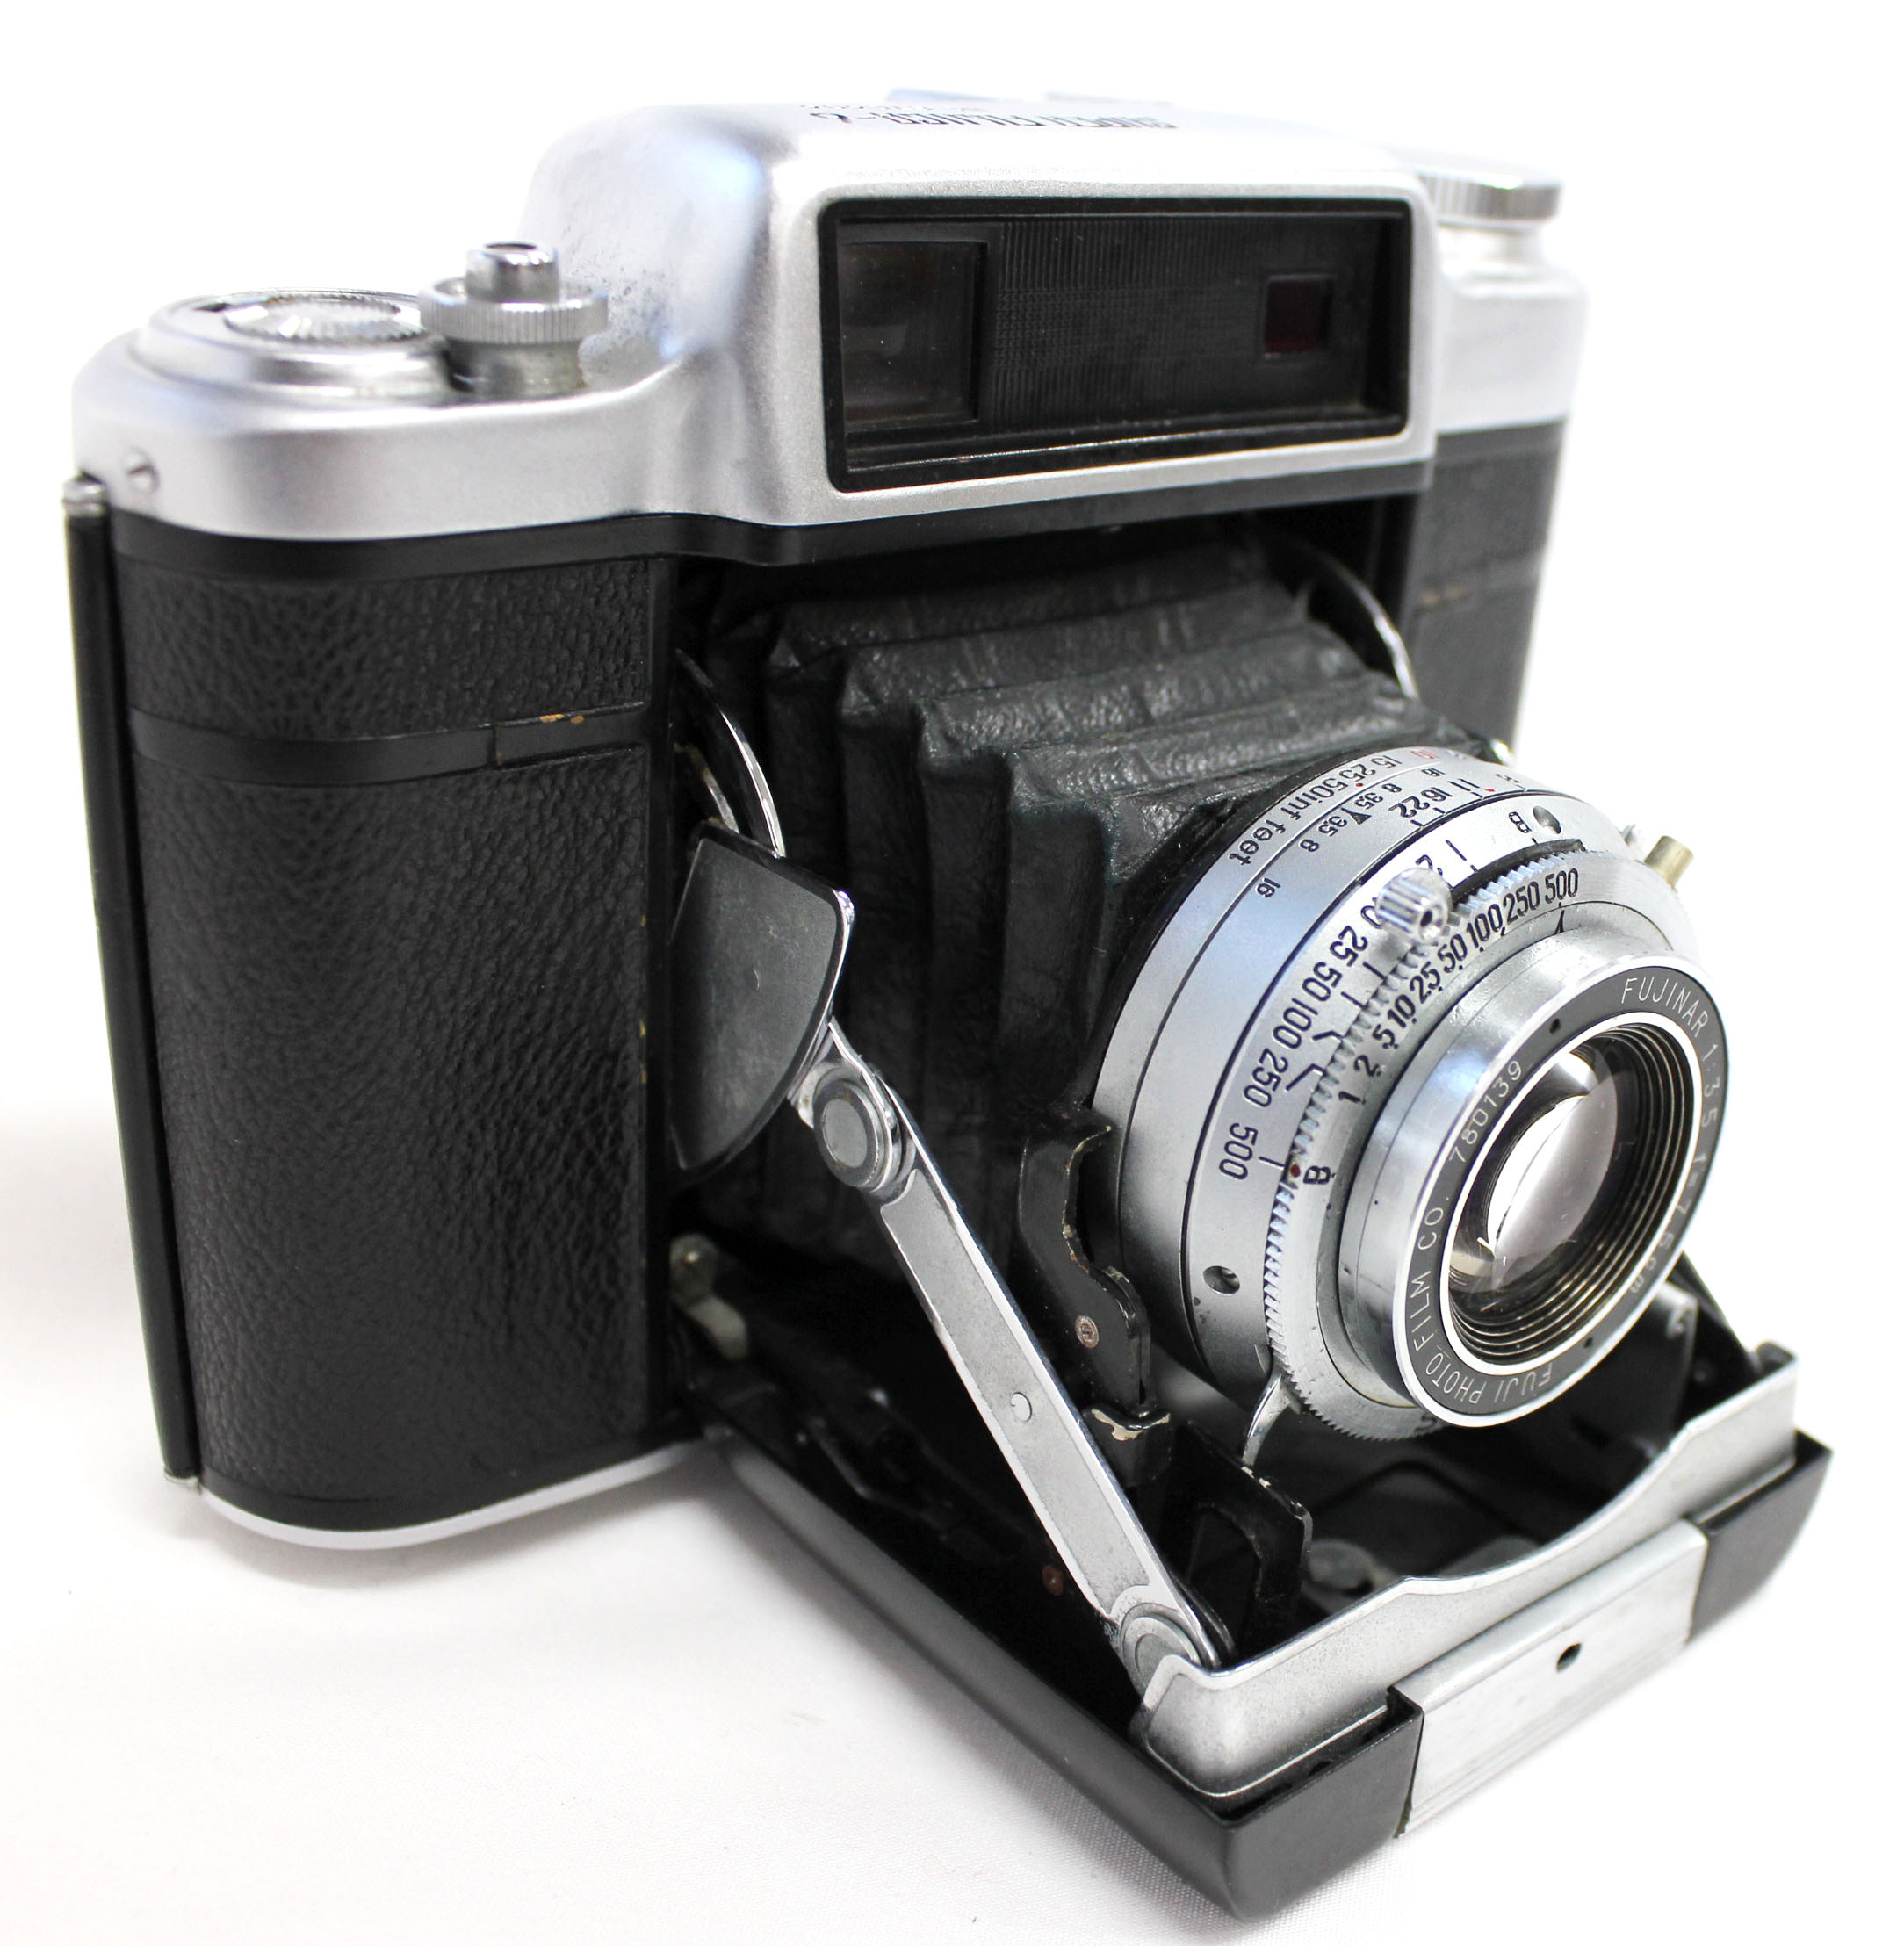 Fuji Super Fujica-6 Six 6x6 Medium Format Film Camera with Fujinar 75mm F/3.5 from Japan Photo 8